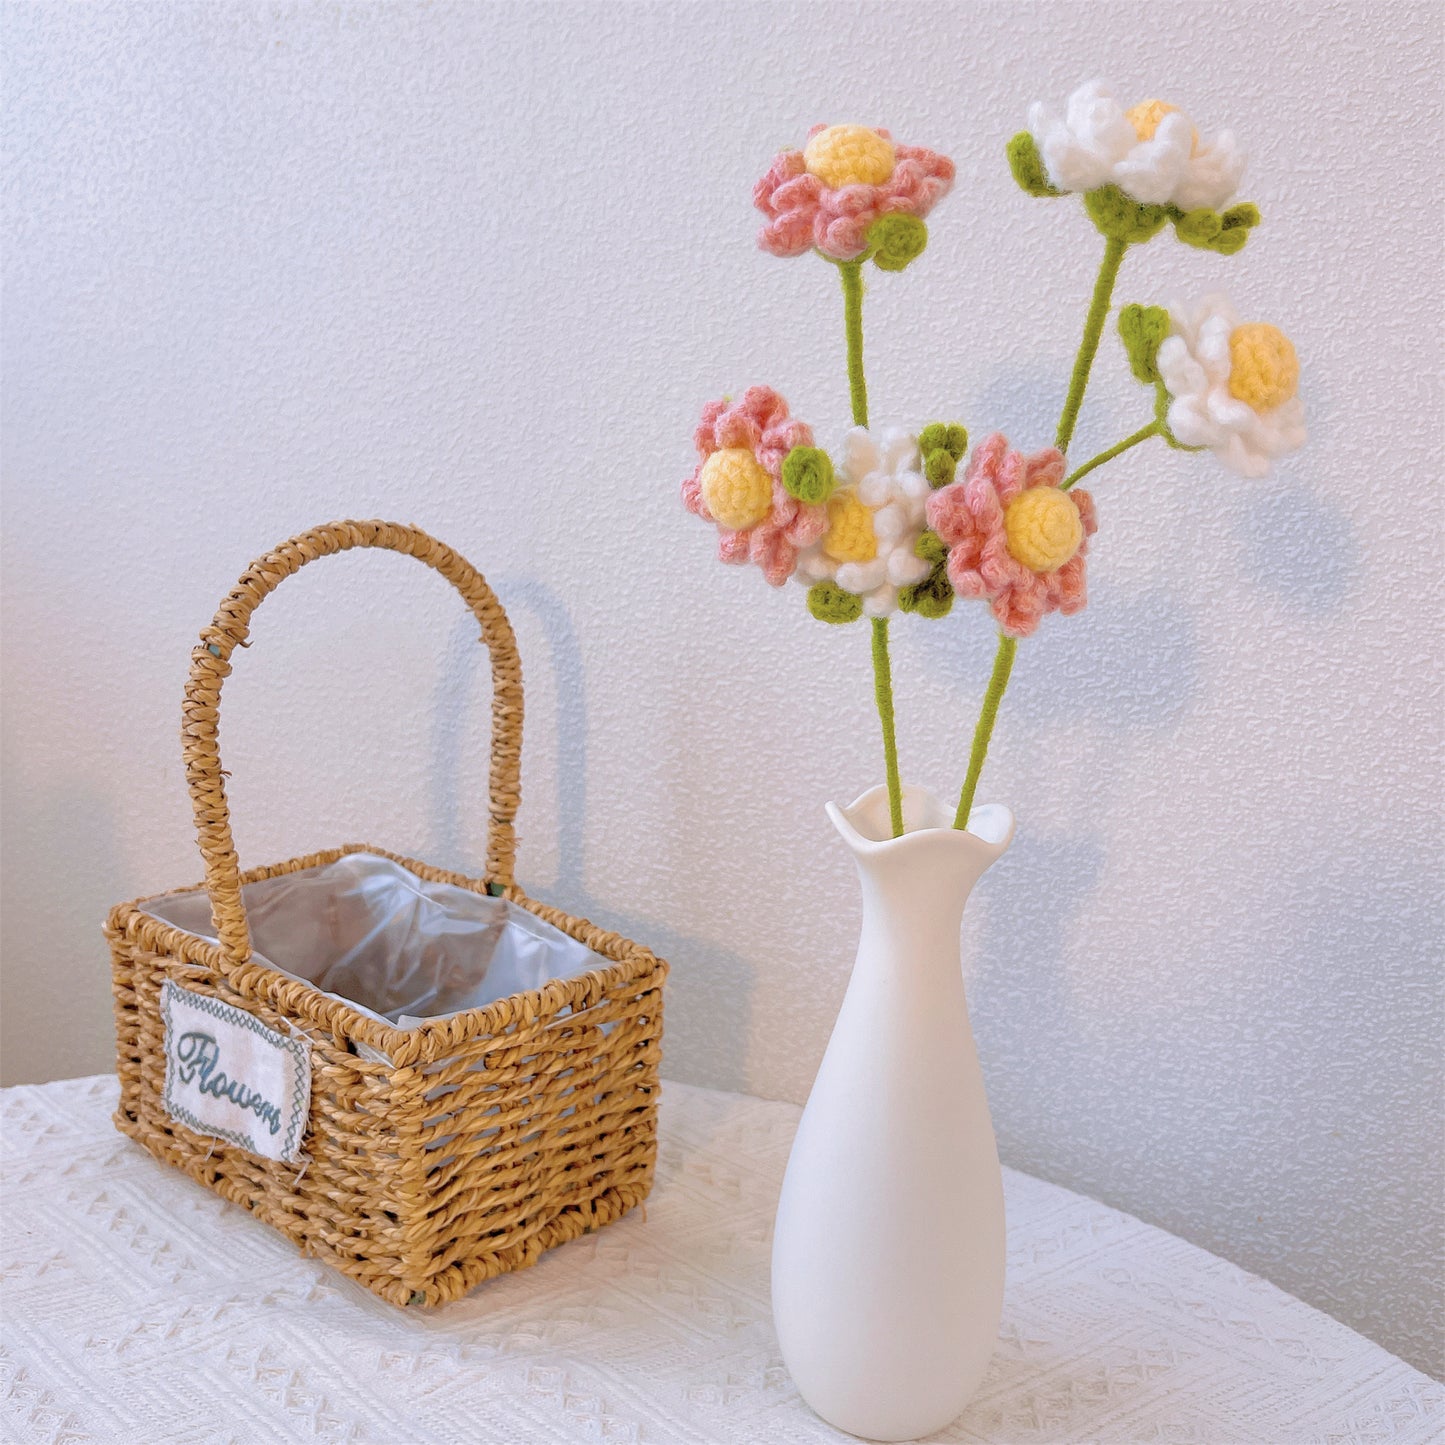 Blühende Gelassenheit: Handgefertigter gehäkelter Kamillenpfahl für eine beruhigende Gartendekoration